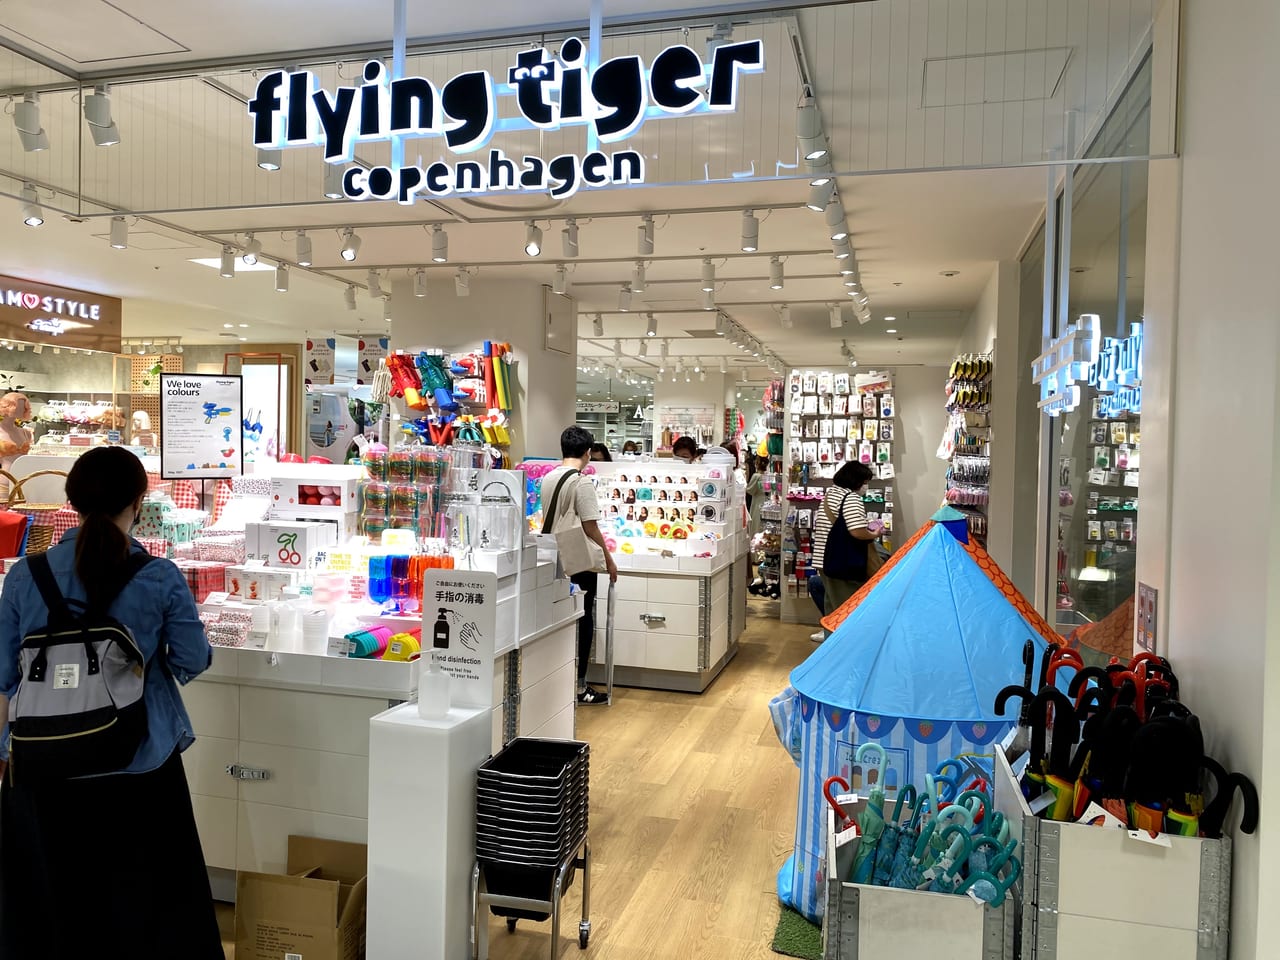 足立区 5月12日 北欧発祥の雑貨ストア フライングタイガー コペンハーゲン が 北千住マルイに常設店としてオープンしました 号外net 足立区